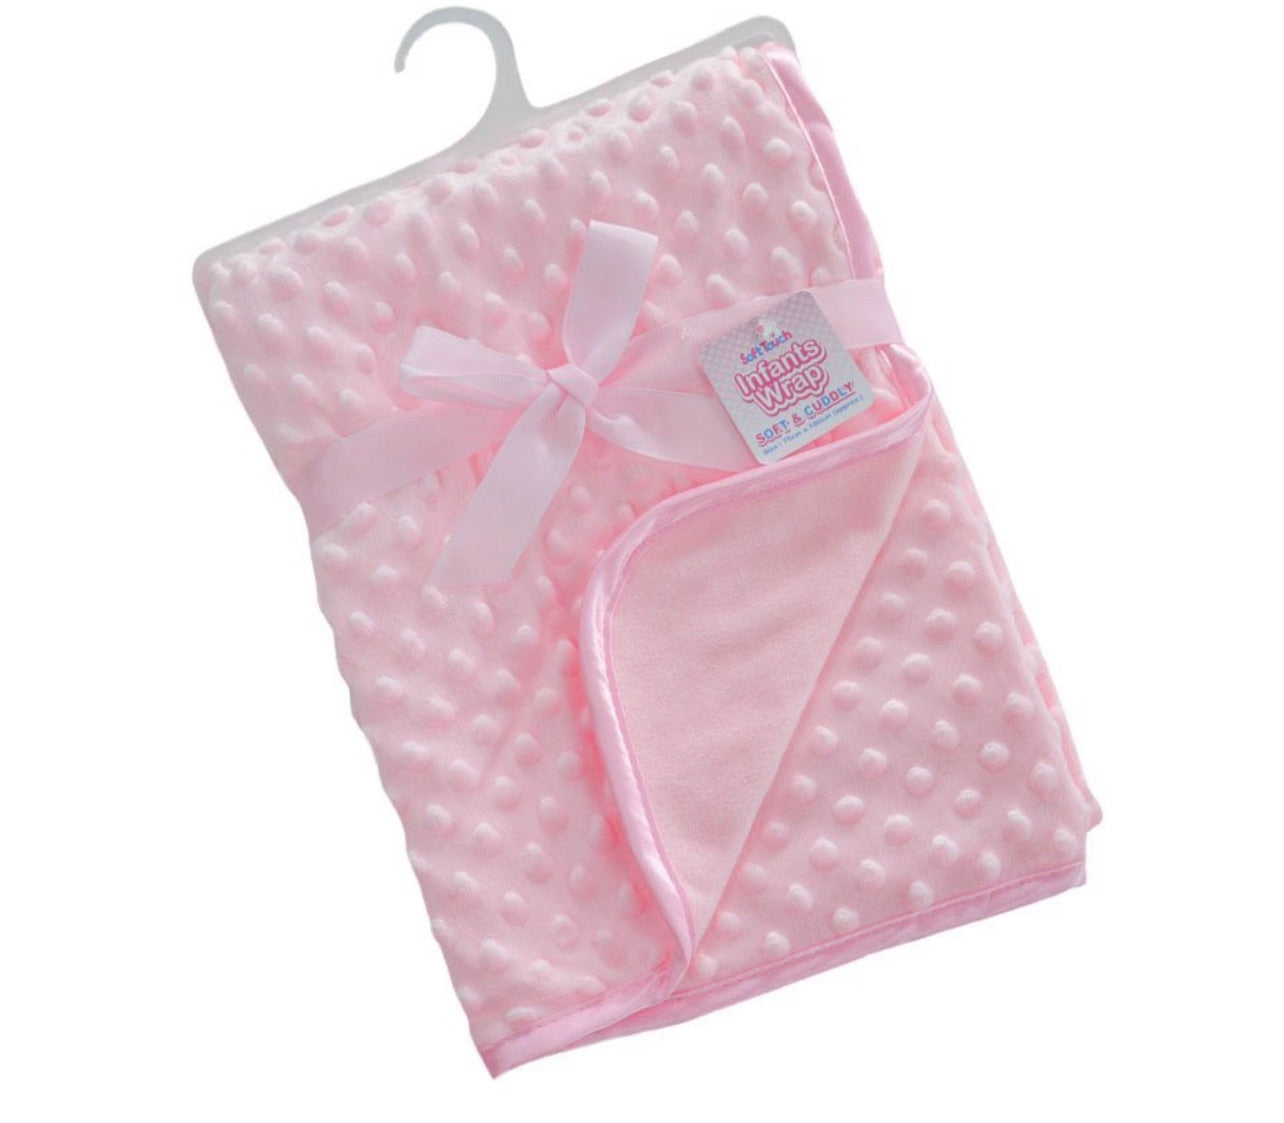 Bobble blanket - Pink